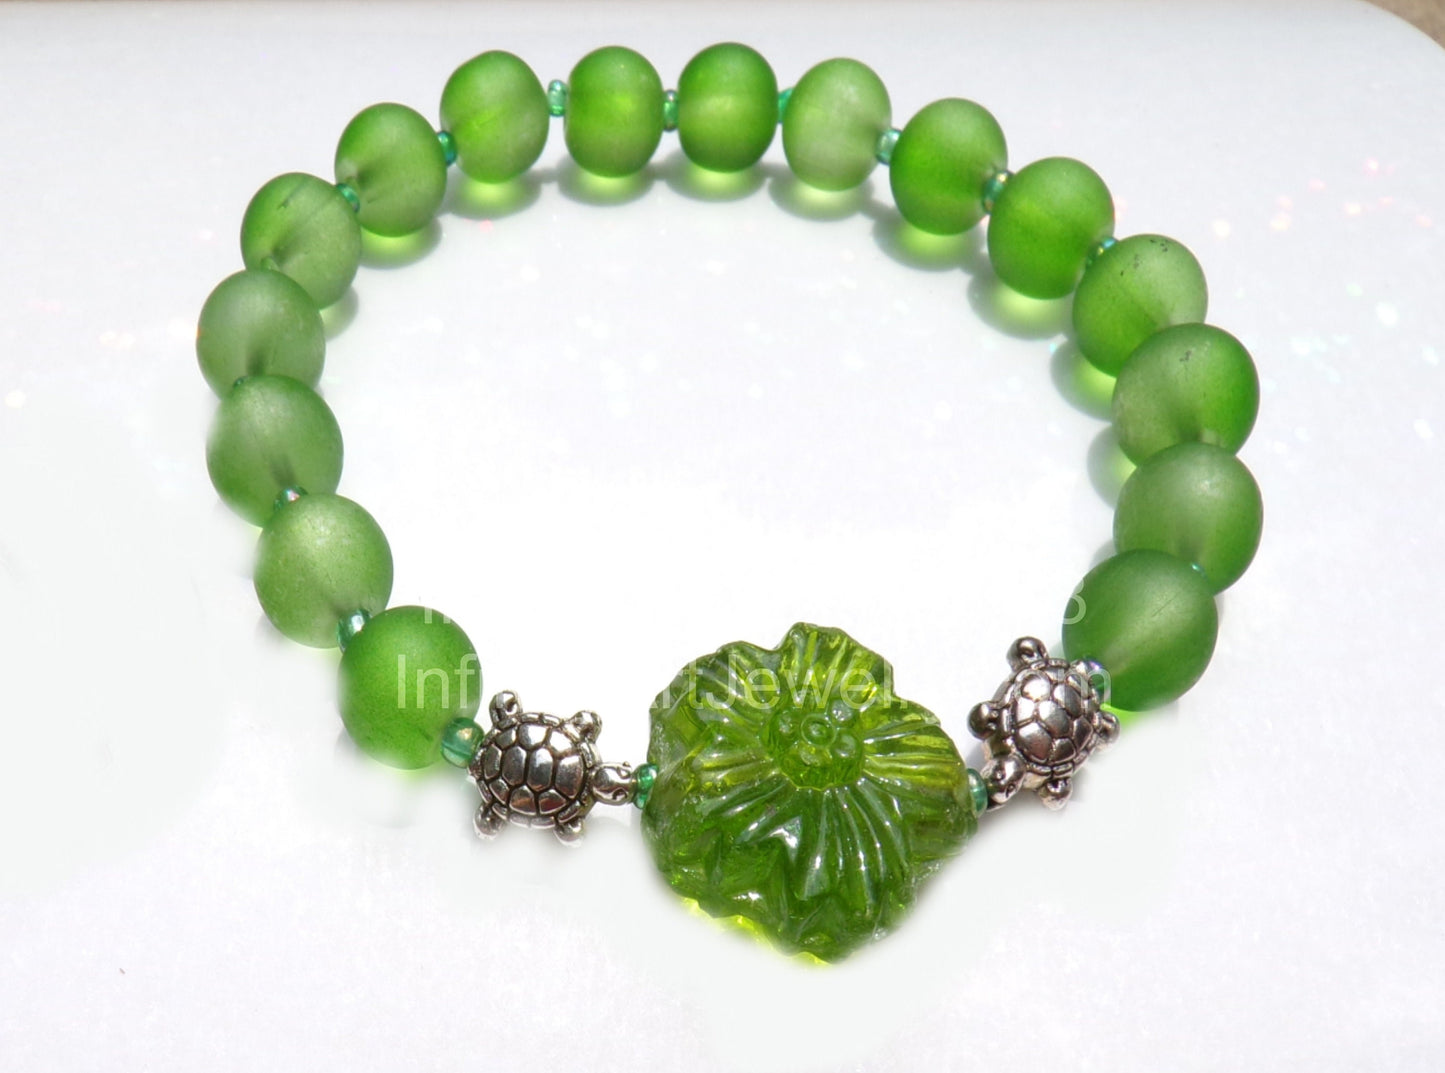 Flower jewelry / Turtle bracelet / Sea Glass bracelet / green jewelry / friend gift / gift for girlfriend / daughter gift / summer jewelry